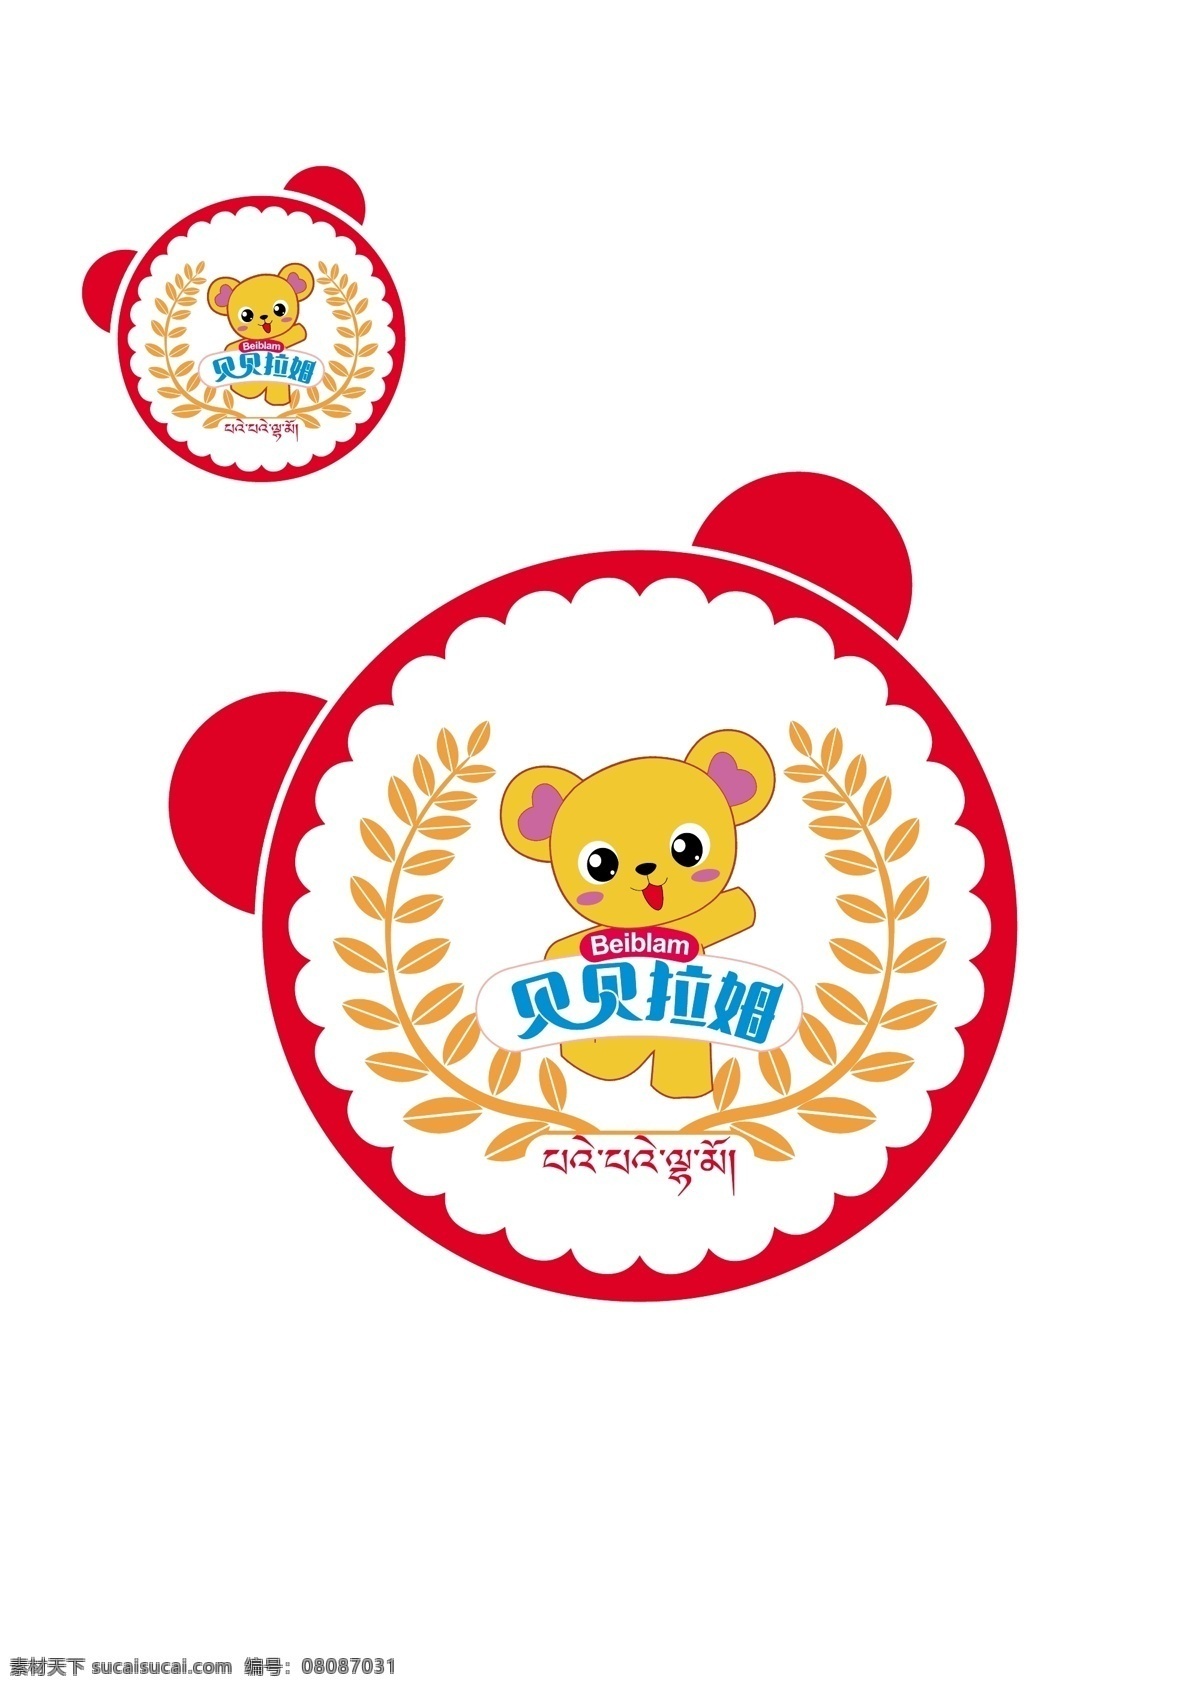 贝贝 拉姆 logo 小熊logo 圆形logo logo设计 卡通logo 标志图标 企业 标志